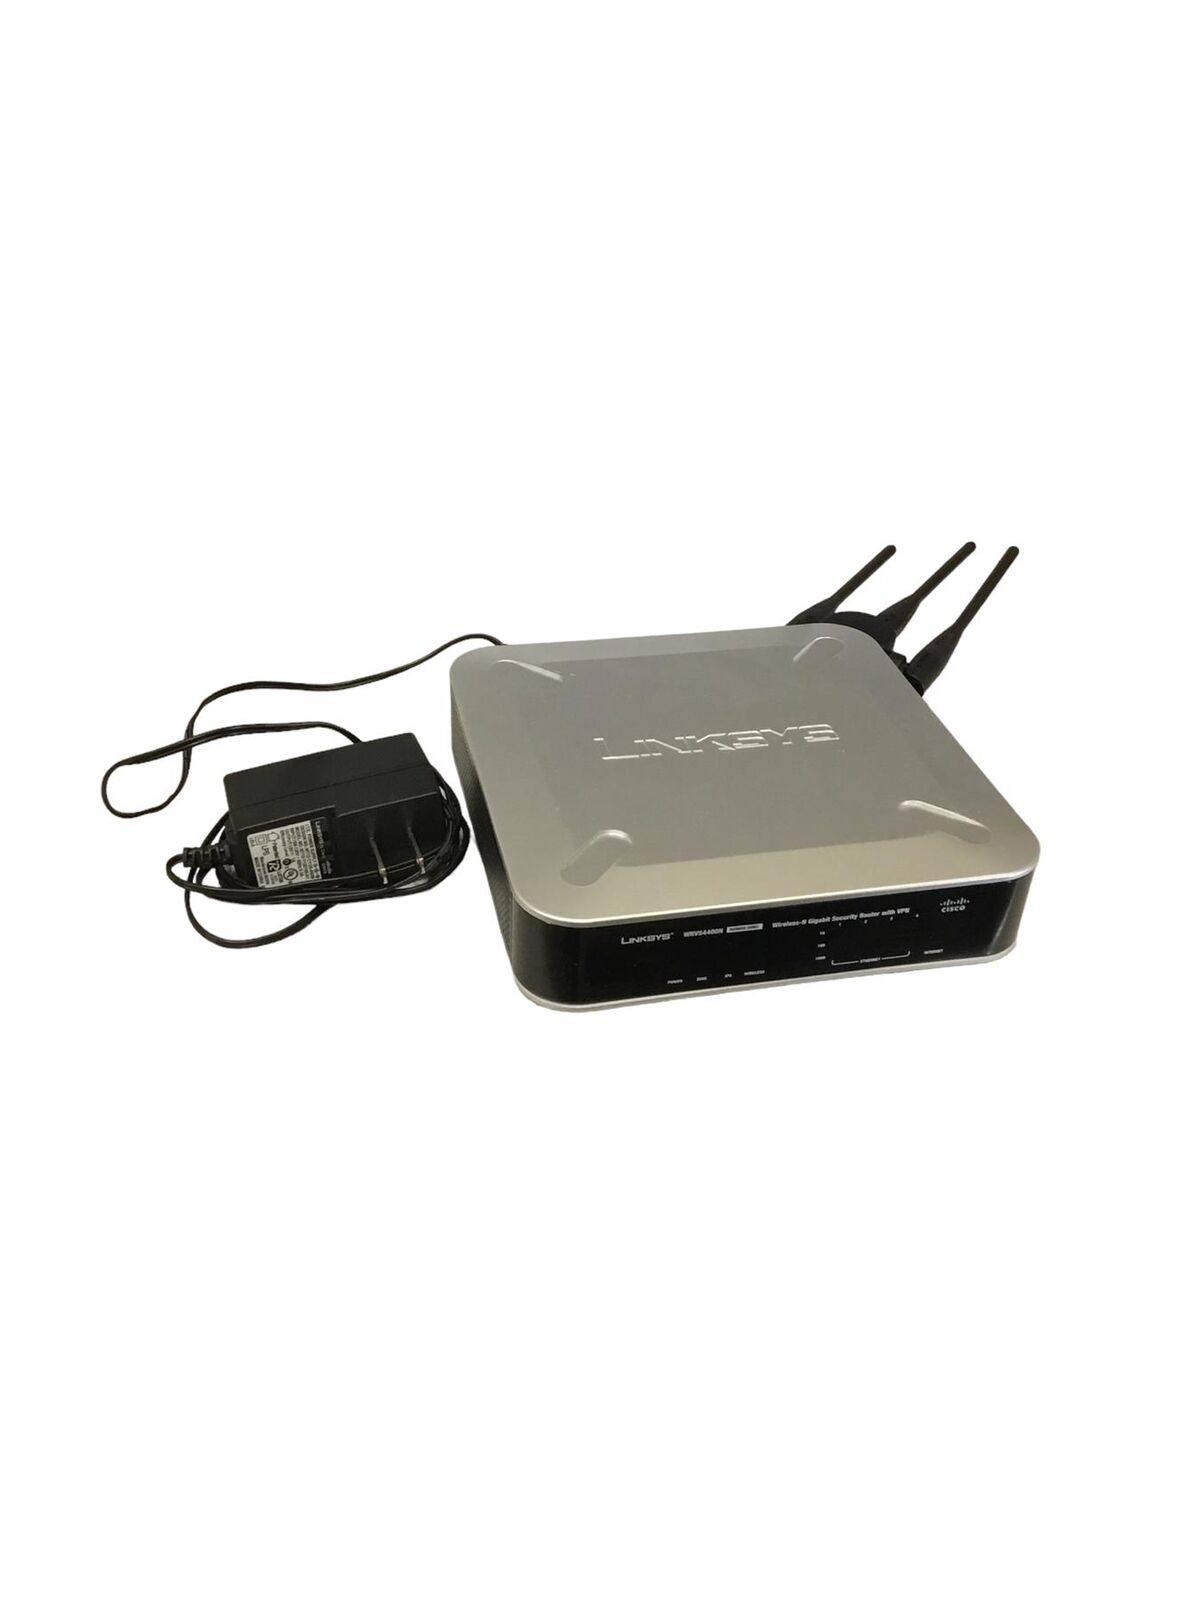 CISCO LINKSYS Wireless N 4-Port Gigabit VPN Router WRVS4400N V2 W/ ADAPTER